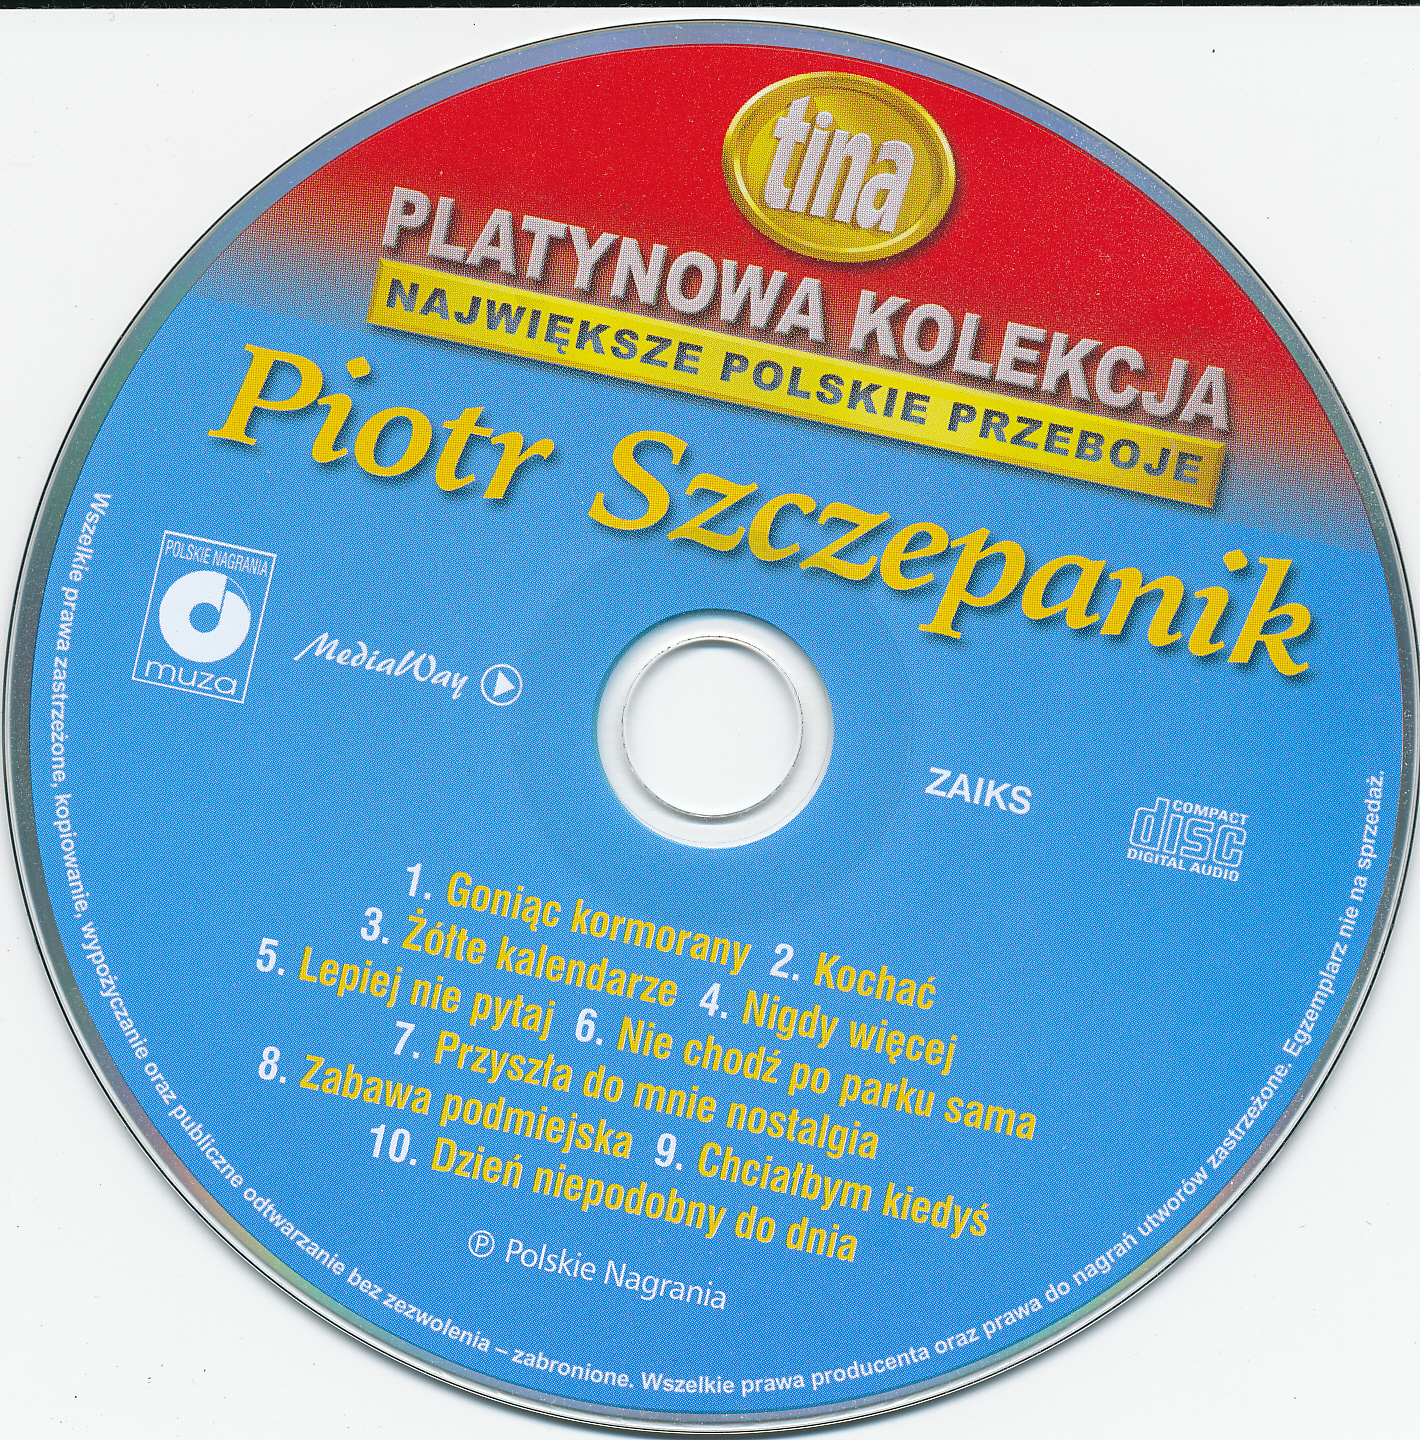 Piotr Szczepanik-Platynowa Kolekcja - 00.3 Piotr Szczepanik.jpg